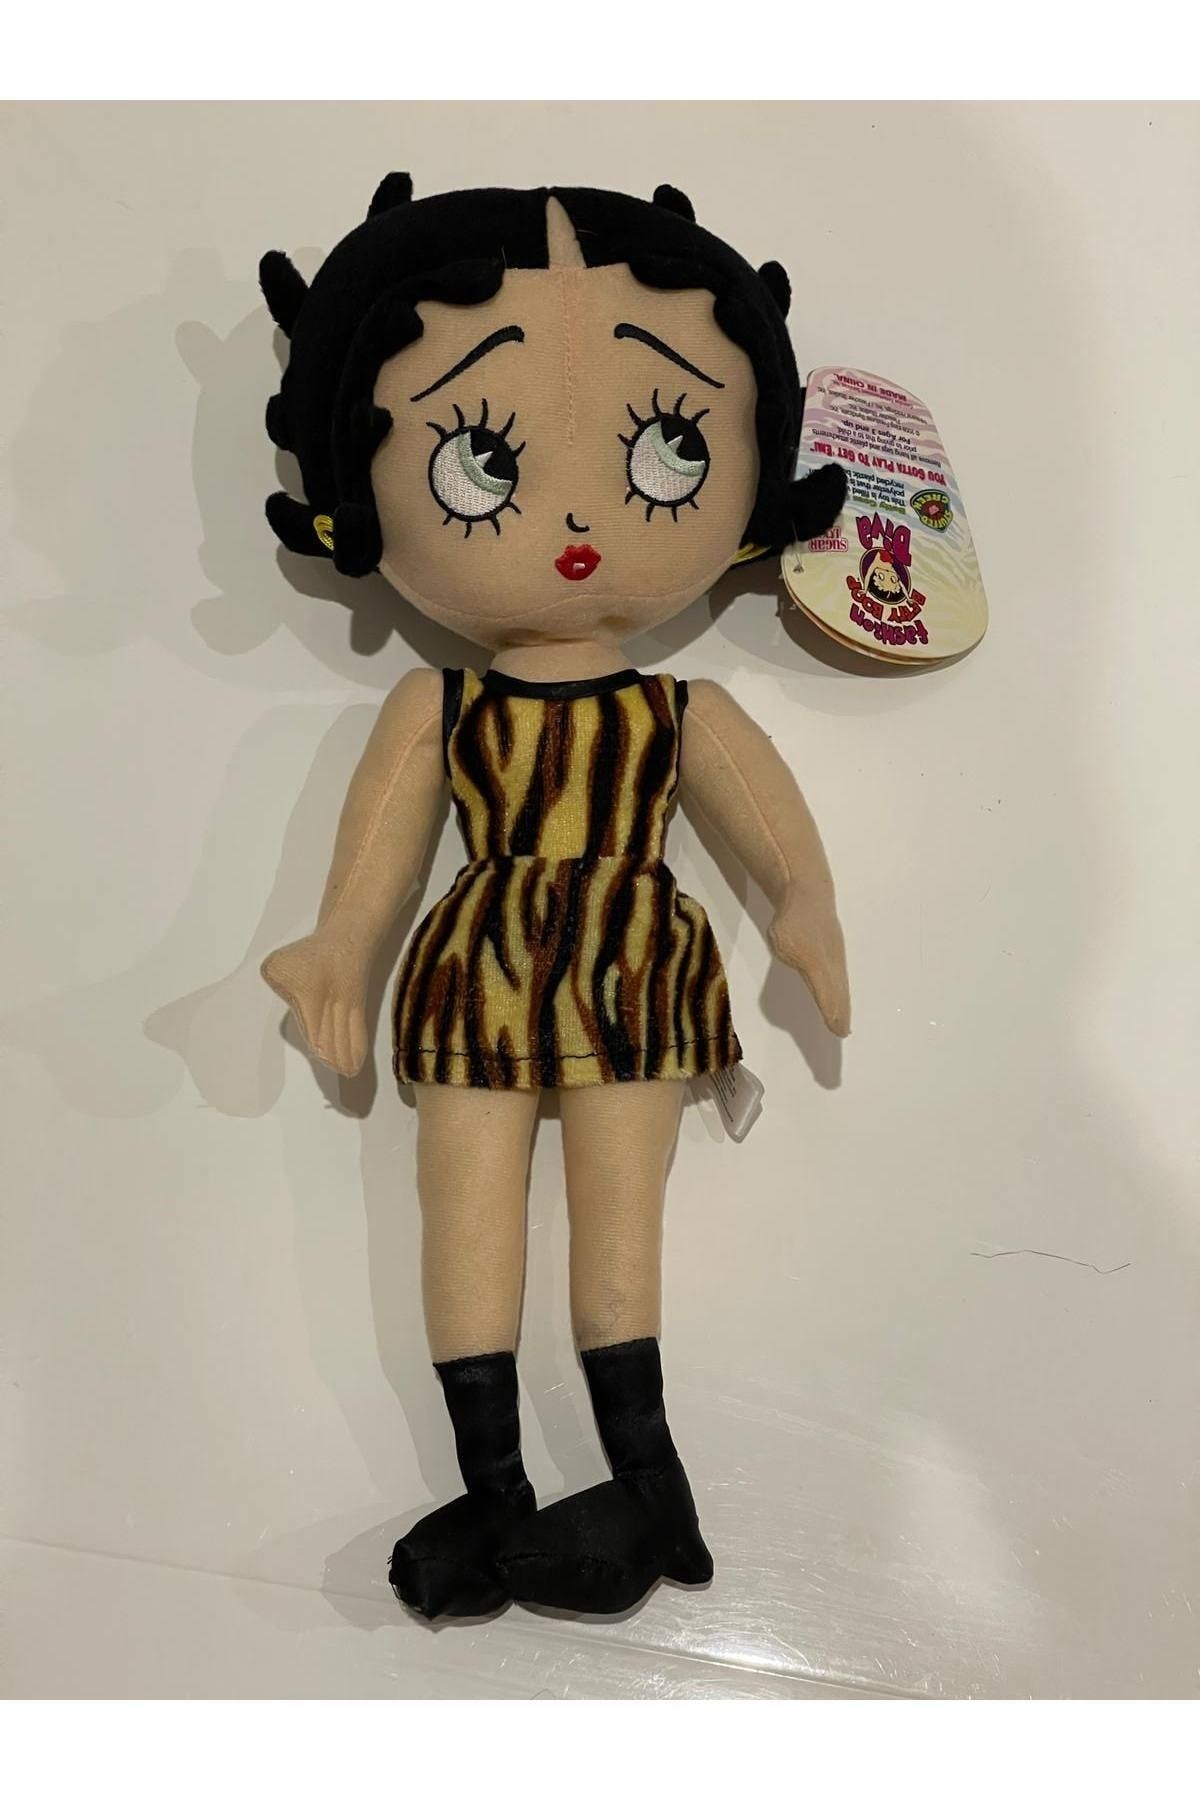 BENİMOLMALI Peluş Betty Boop Oyuncak, Peluş Oyuncak Betty Boop, 38cm, Zebra Giyimli